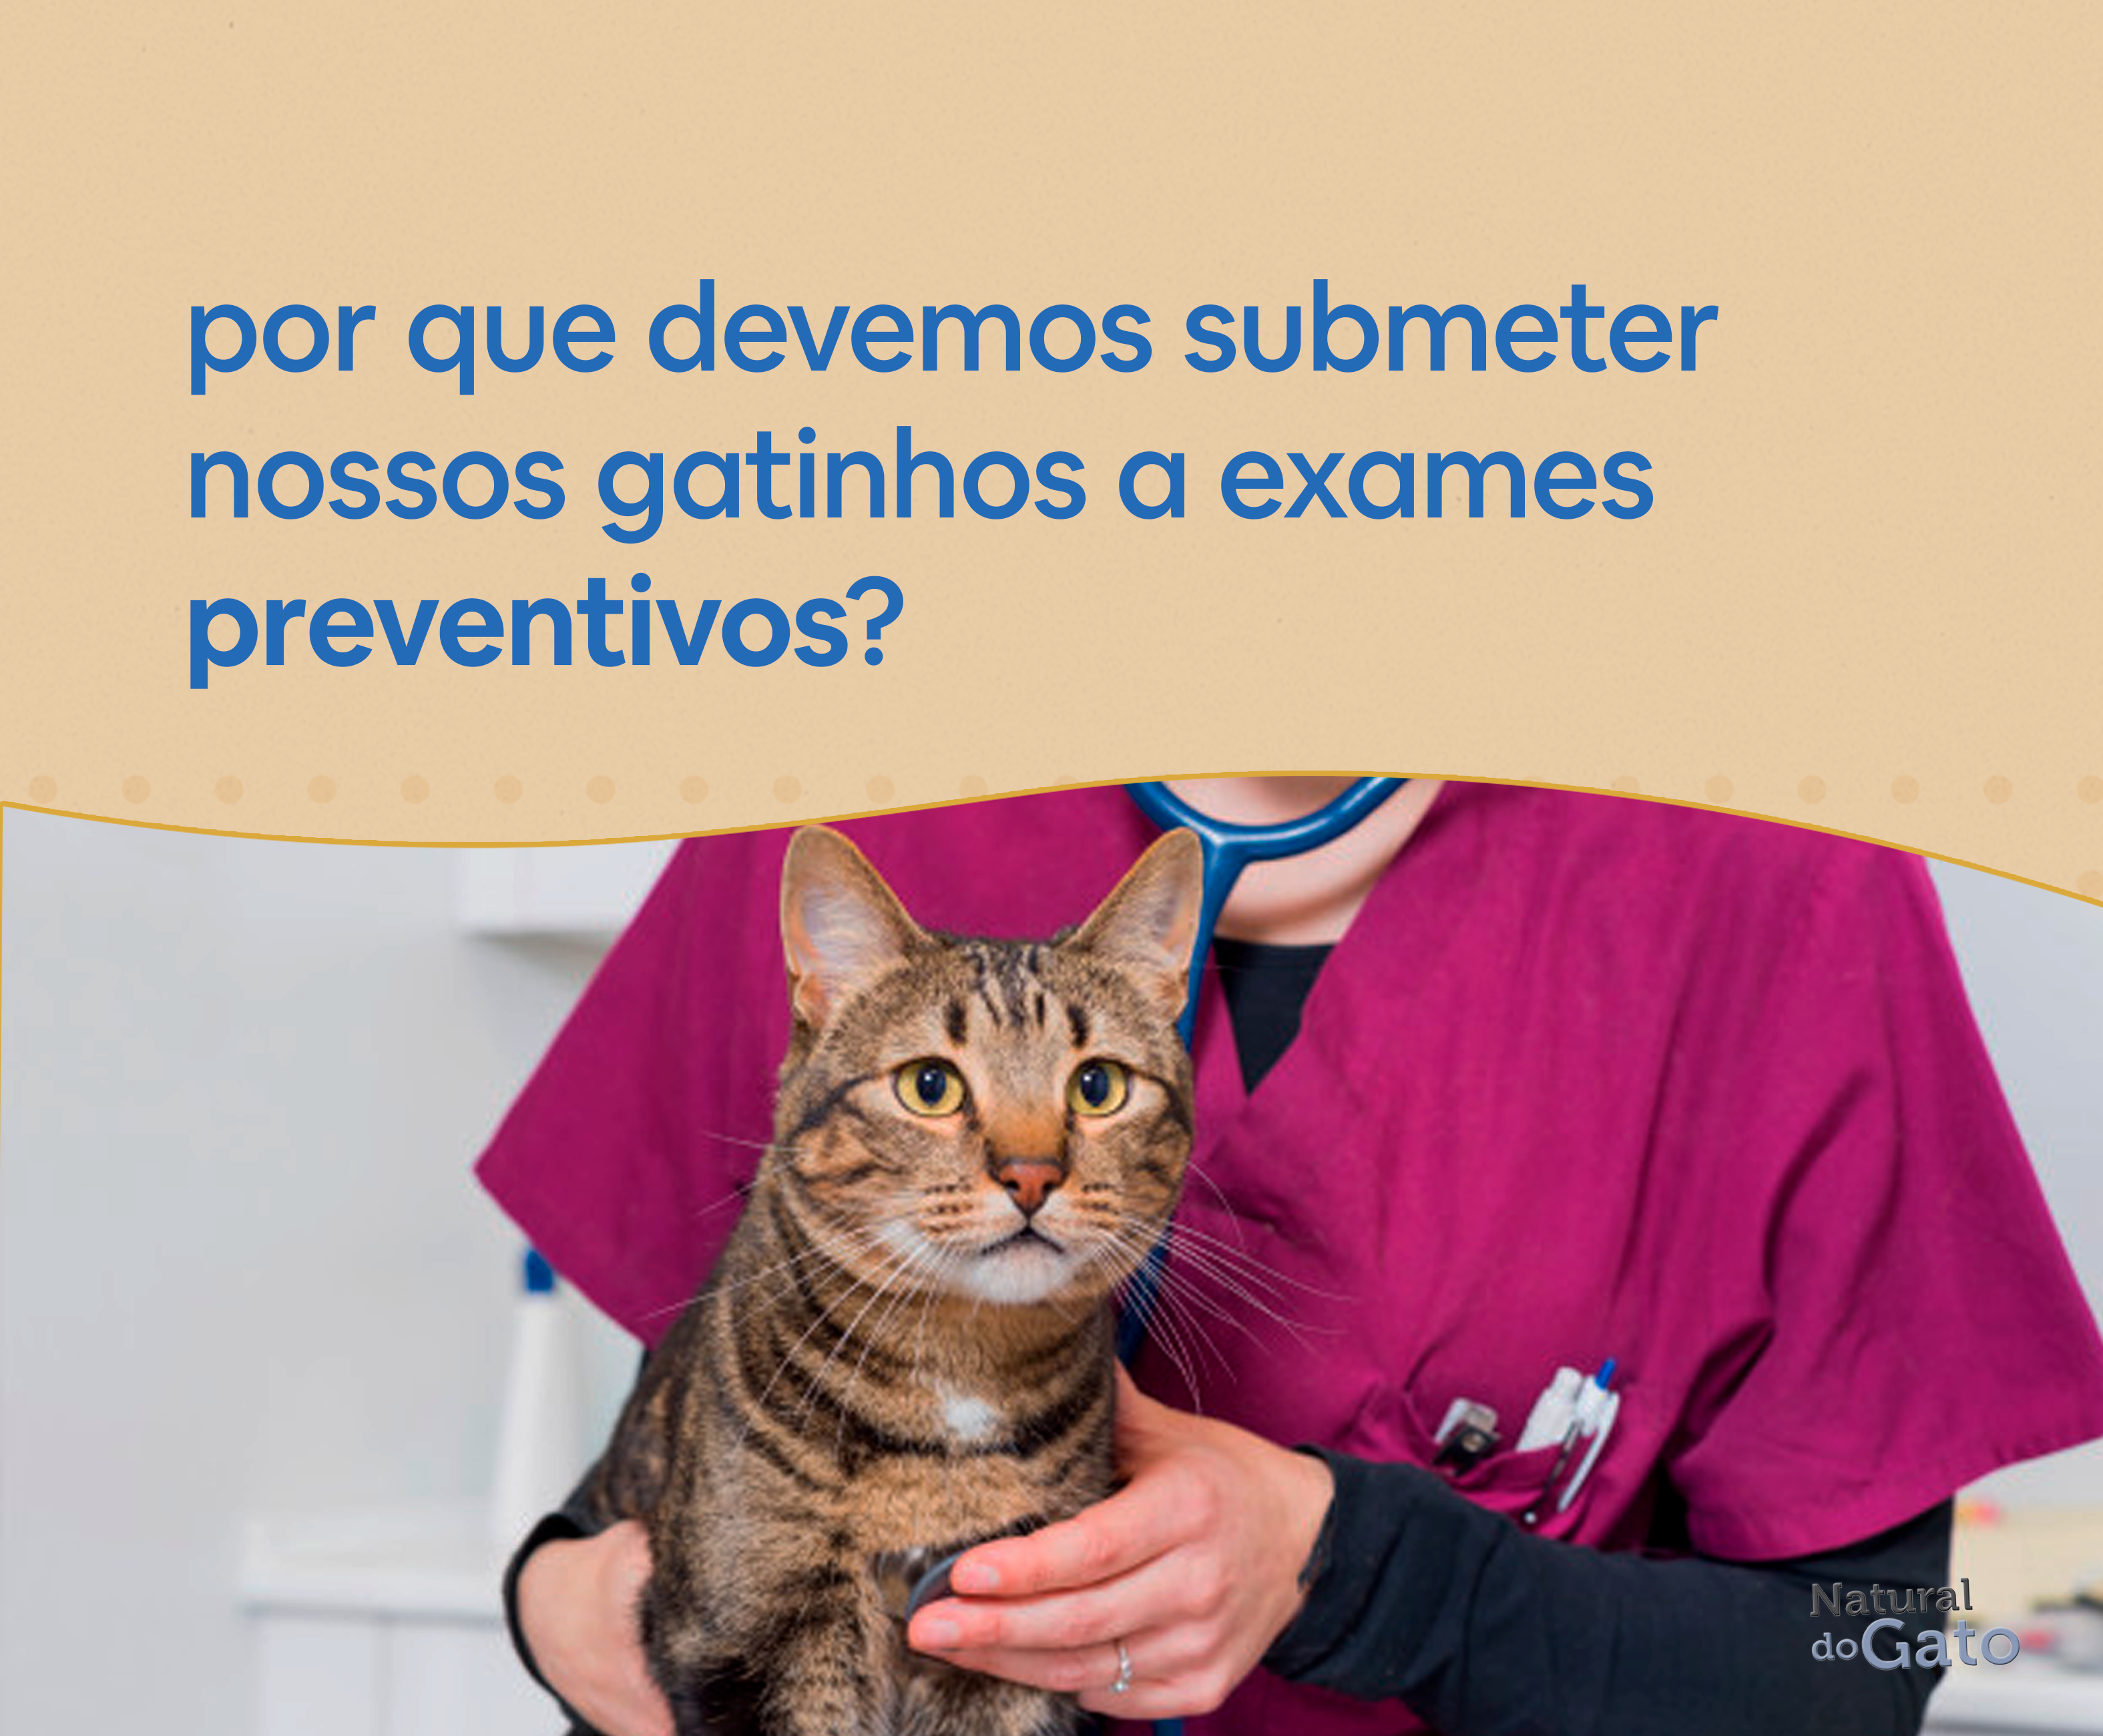 Por que devemos submeter nossos gatinhos a exames preventivos??